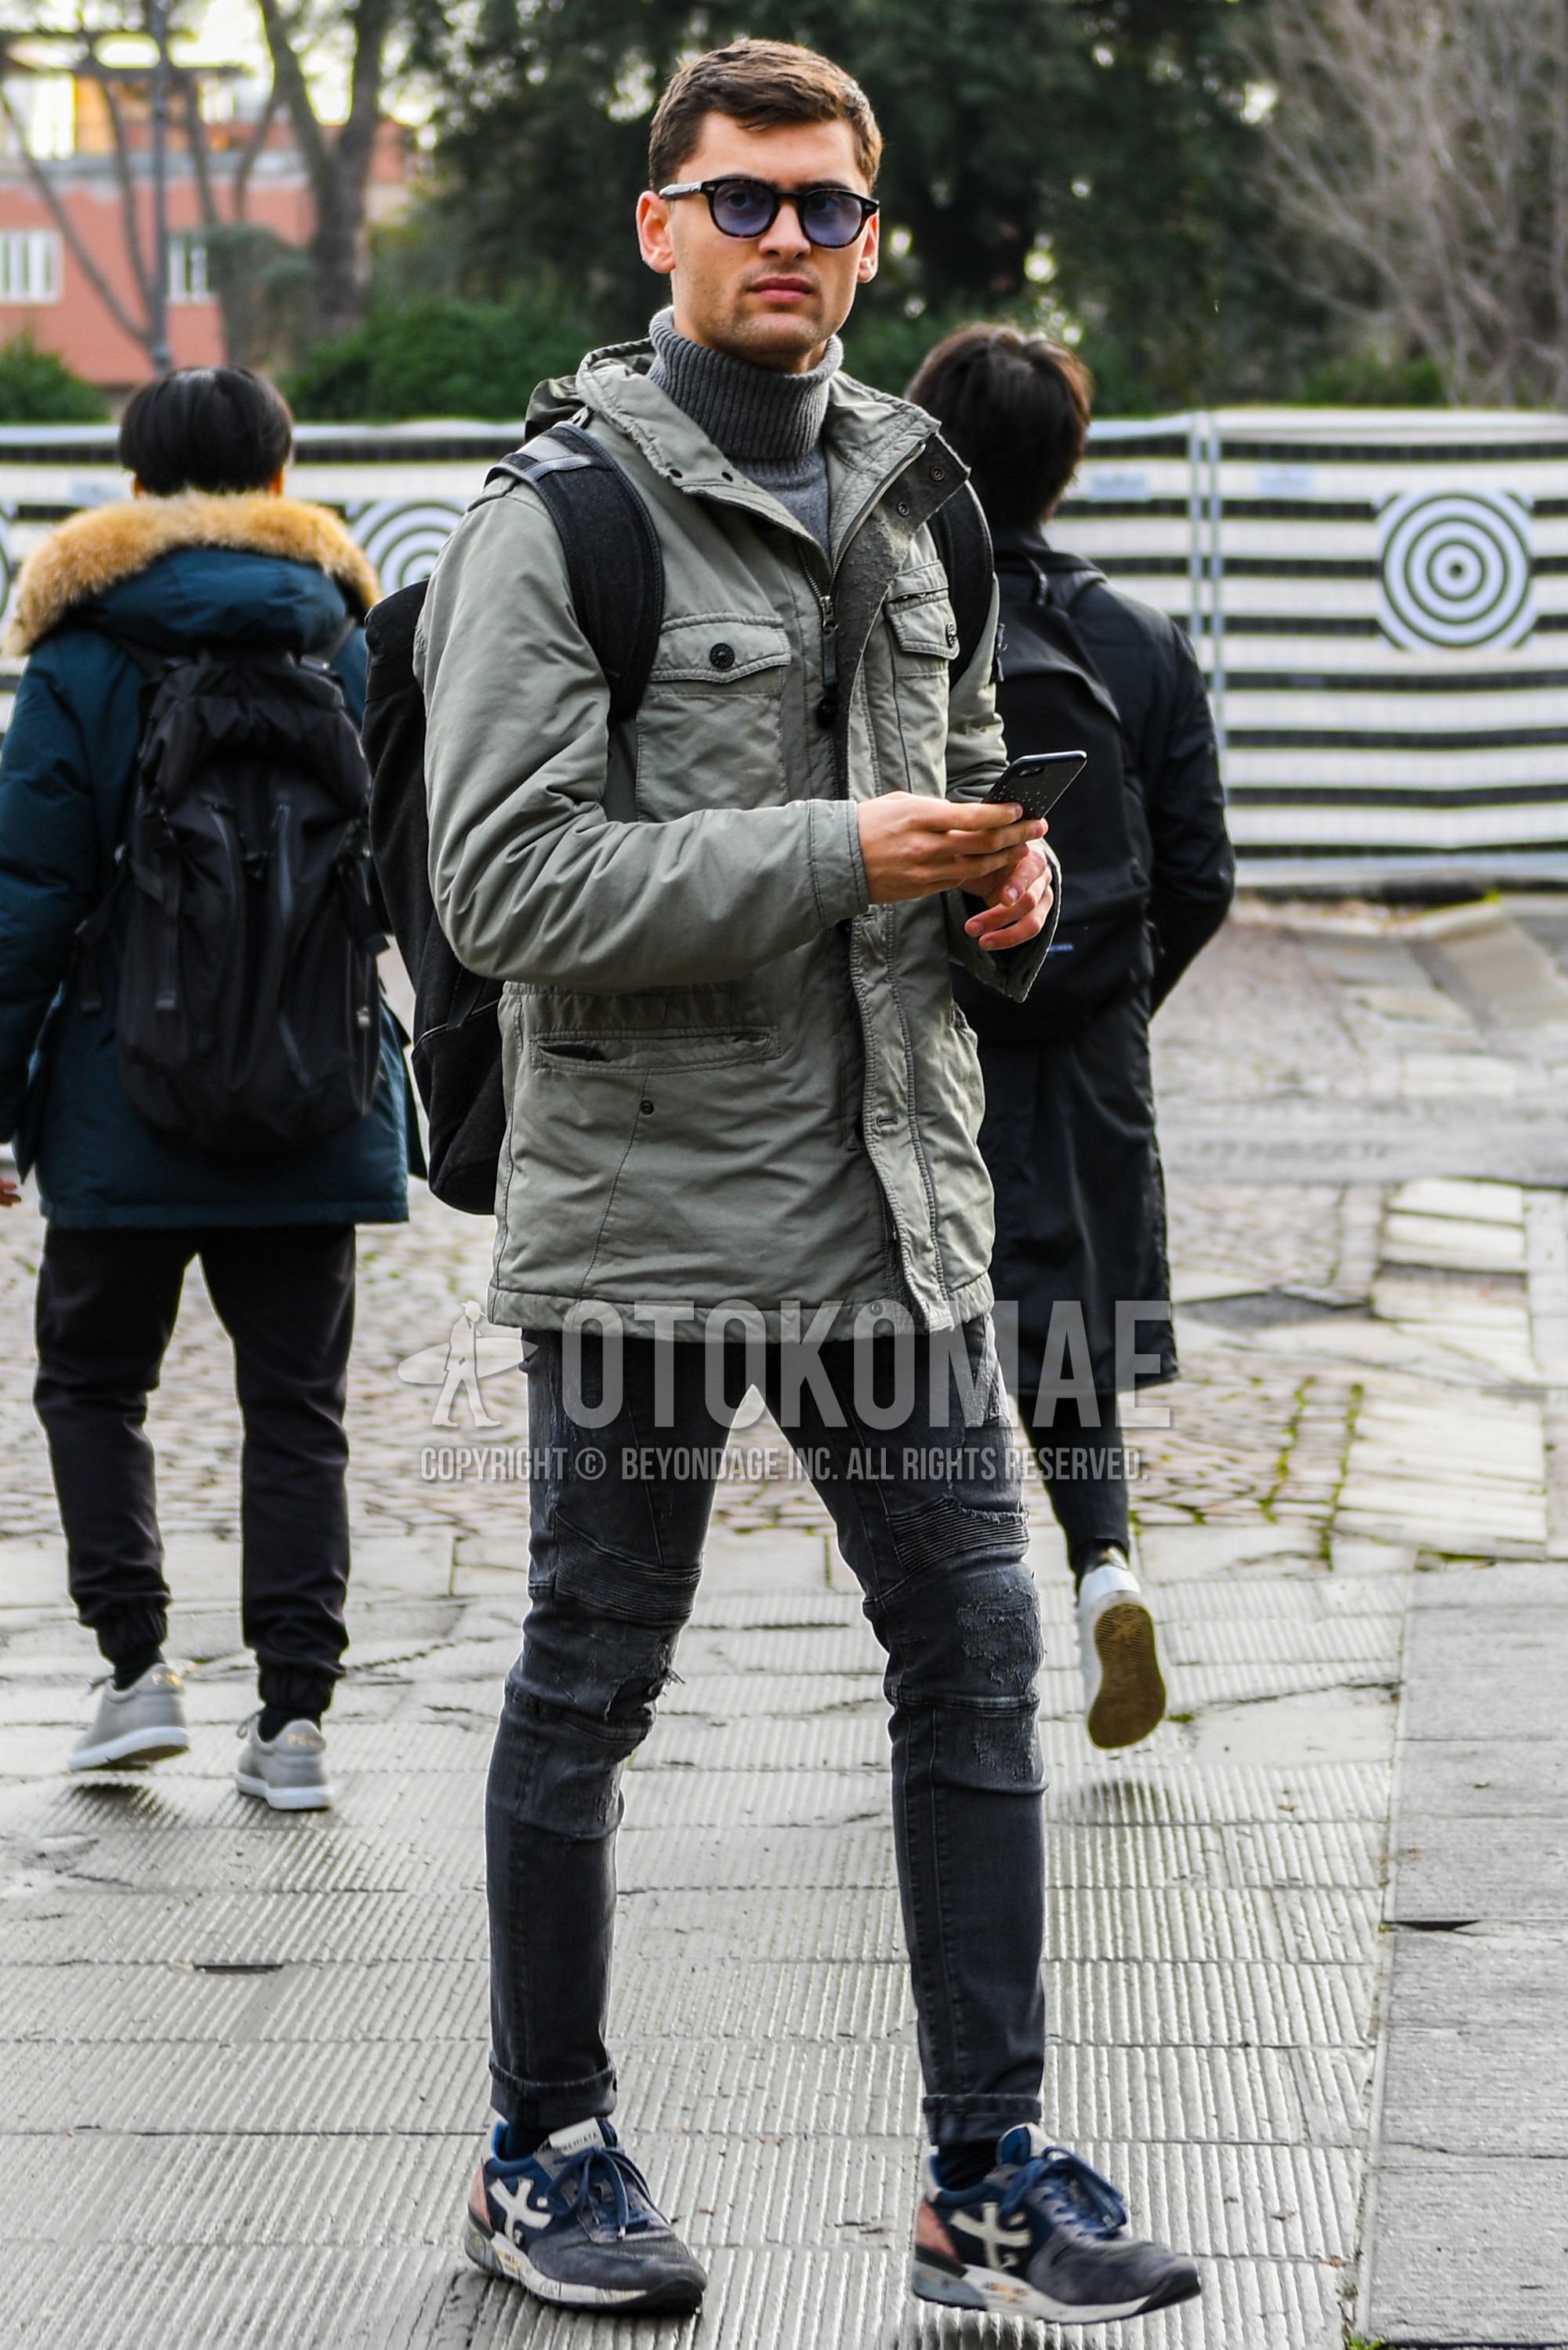 Men's autumn winter outfit with plain sunglasses, gray plain M-65, gray plain turtleneck knit, gray plain damaged jeans, navy low-cut sneakers.